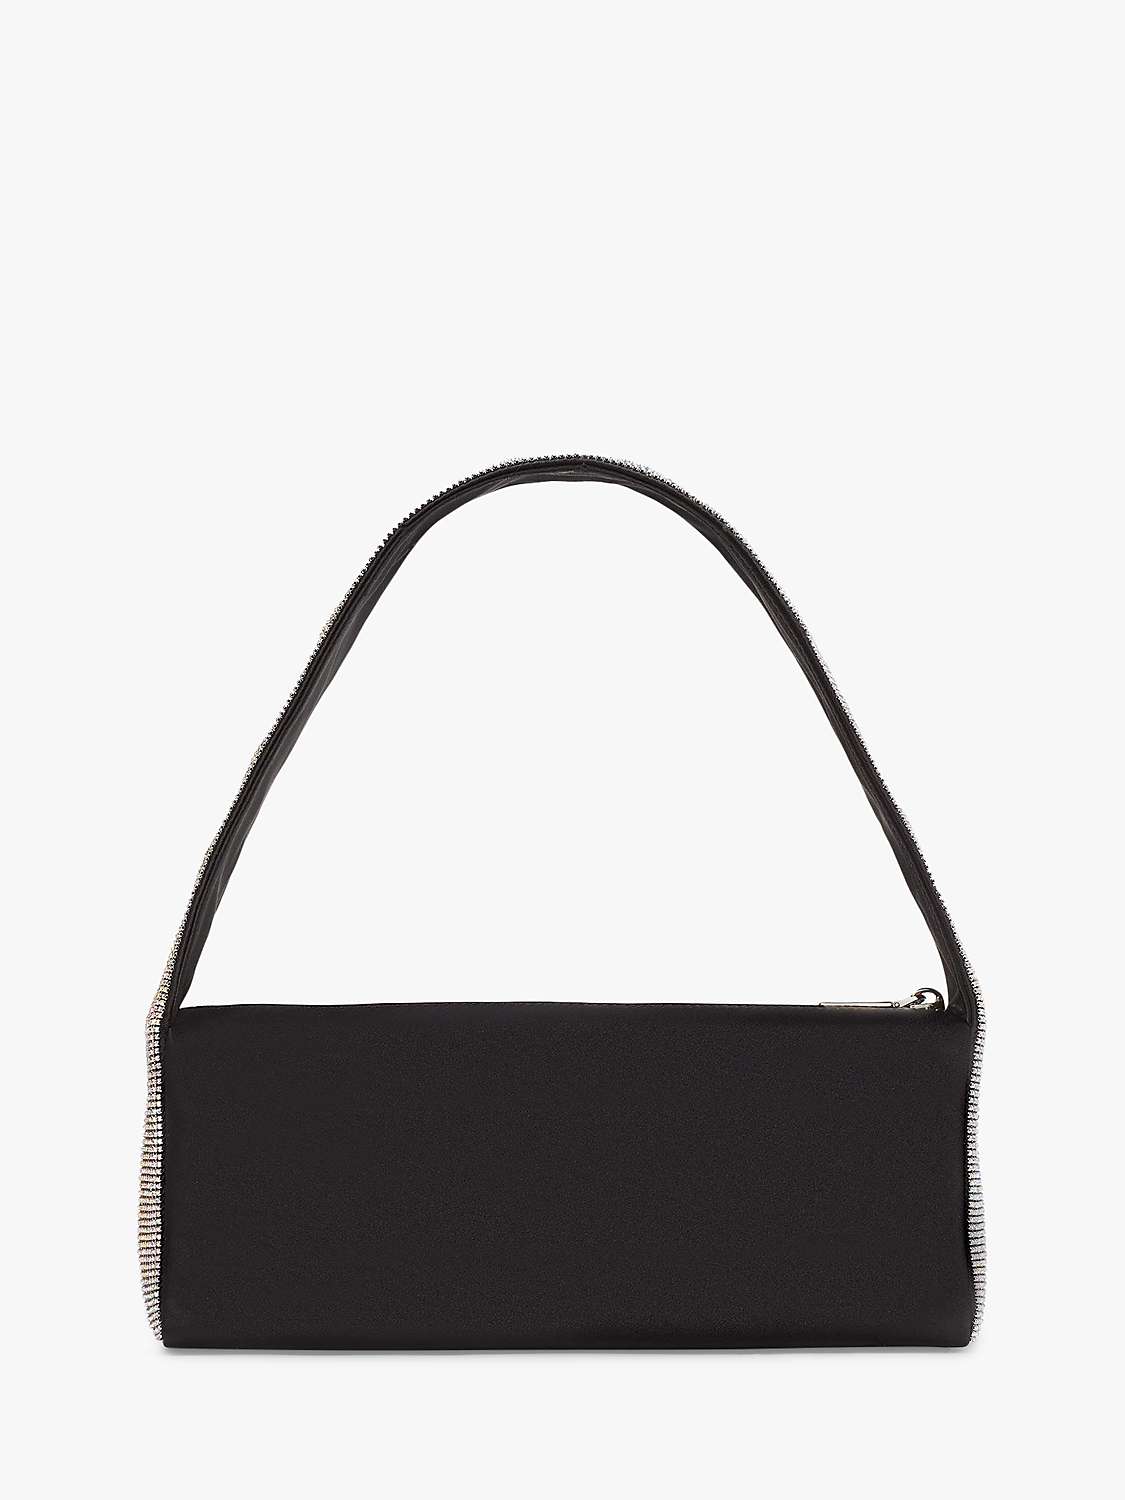 kate spade new york Crystal Shoulder Bag, Black at John Lewis & Partners